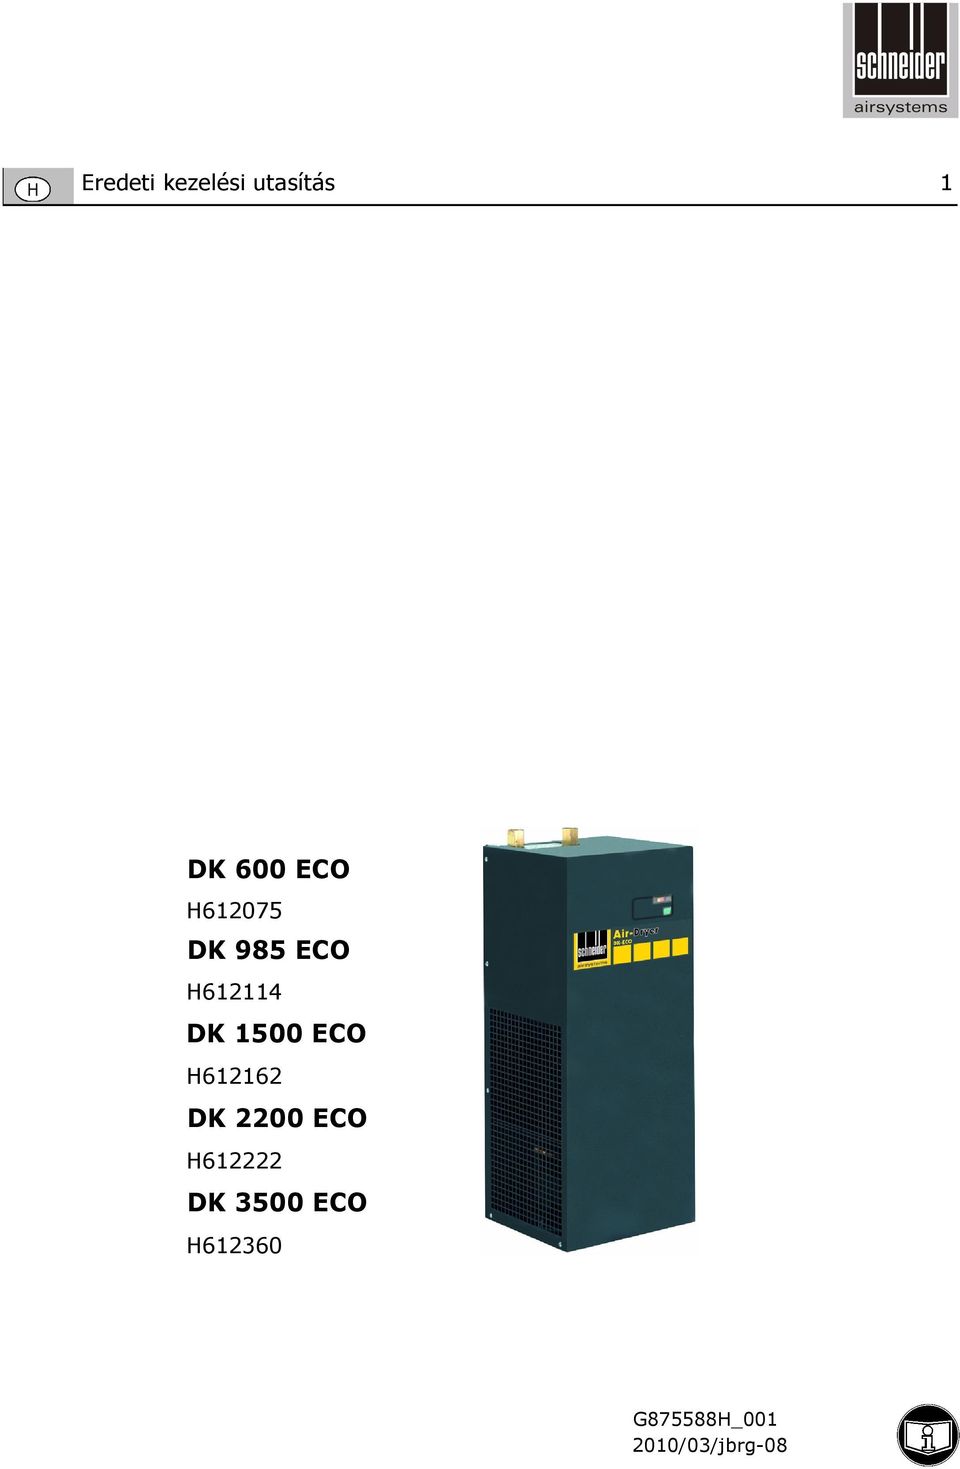 H612162 DK 2200 ECO H612222 DK 3500